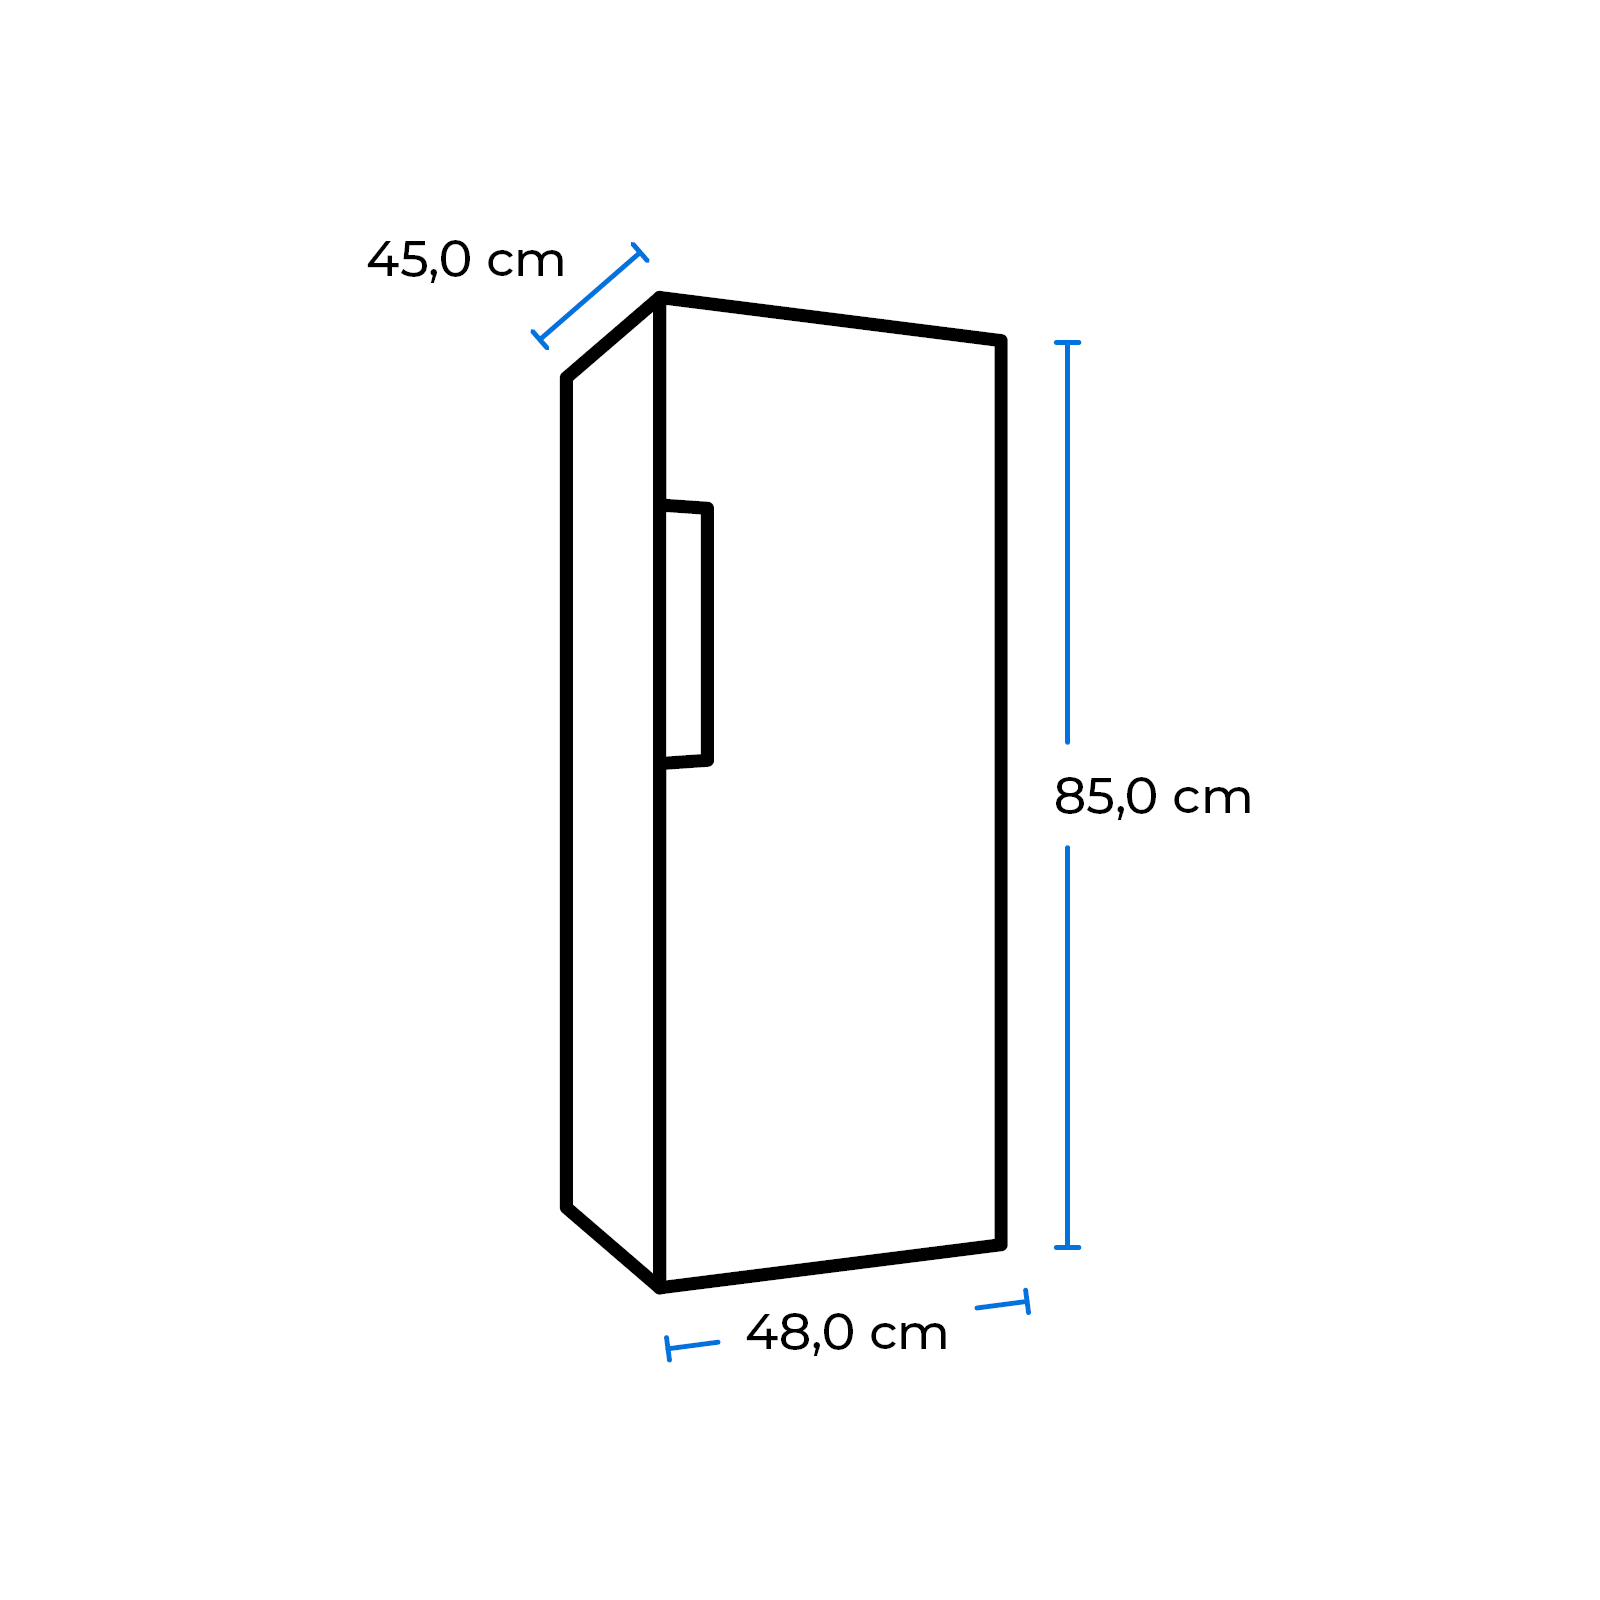 EXQUISIT KS117-3-010E weiss Freistehende Kühlschränke Weiß) hoch, (E, mm 850